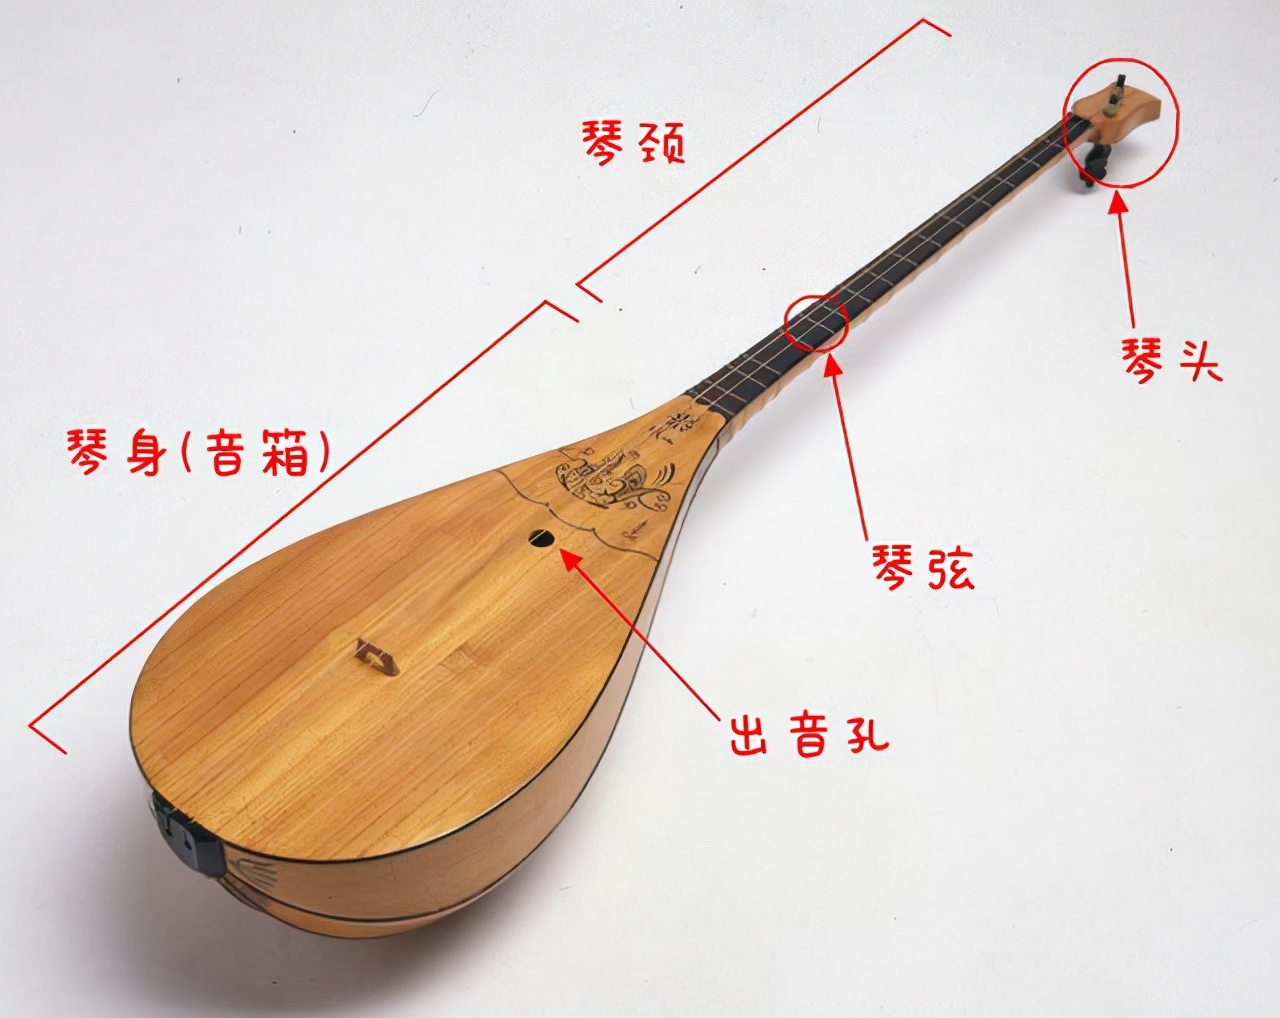 新疆常见的民族乐器 冬不拉是什么民族的弹拨乐器